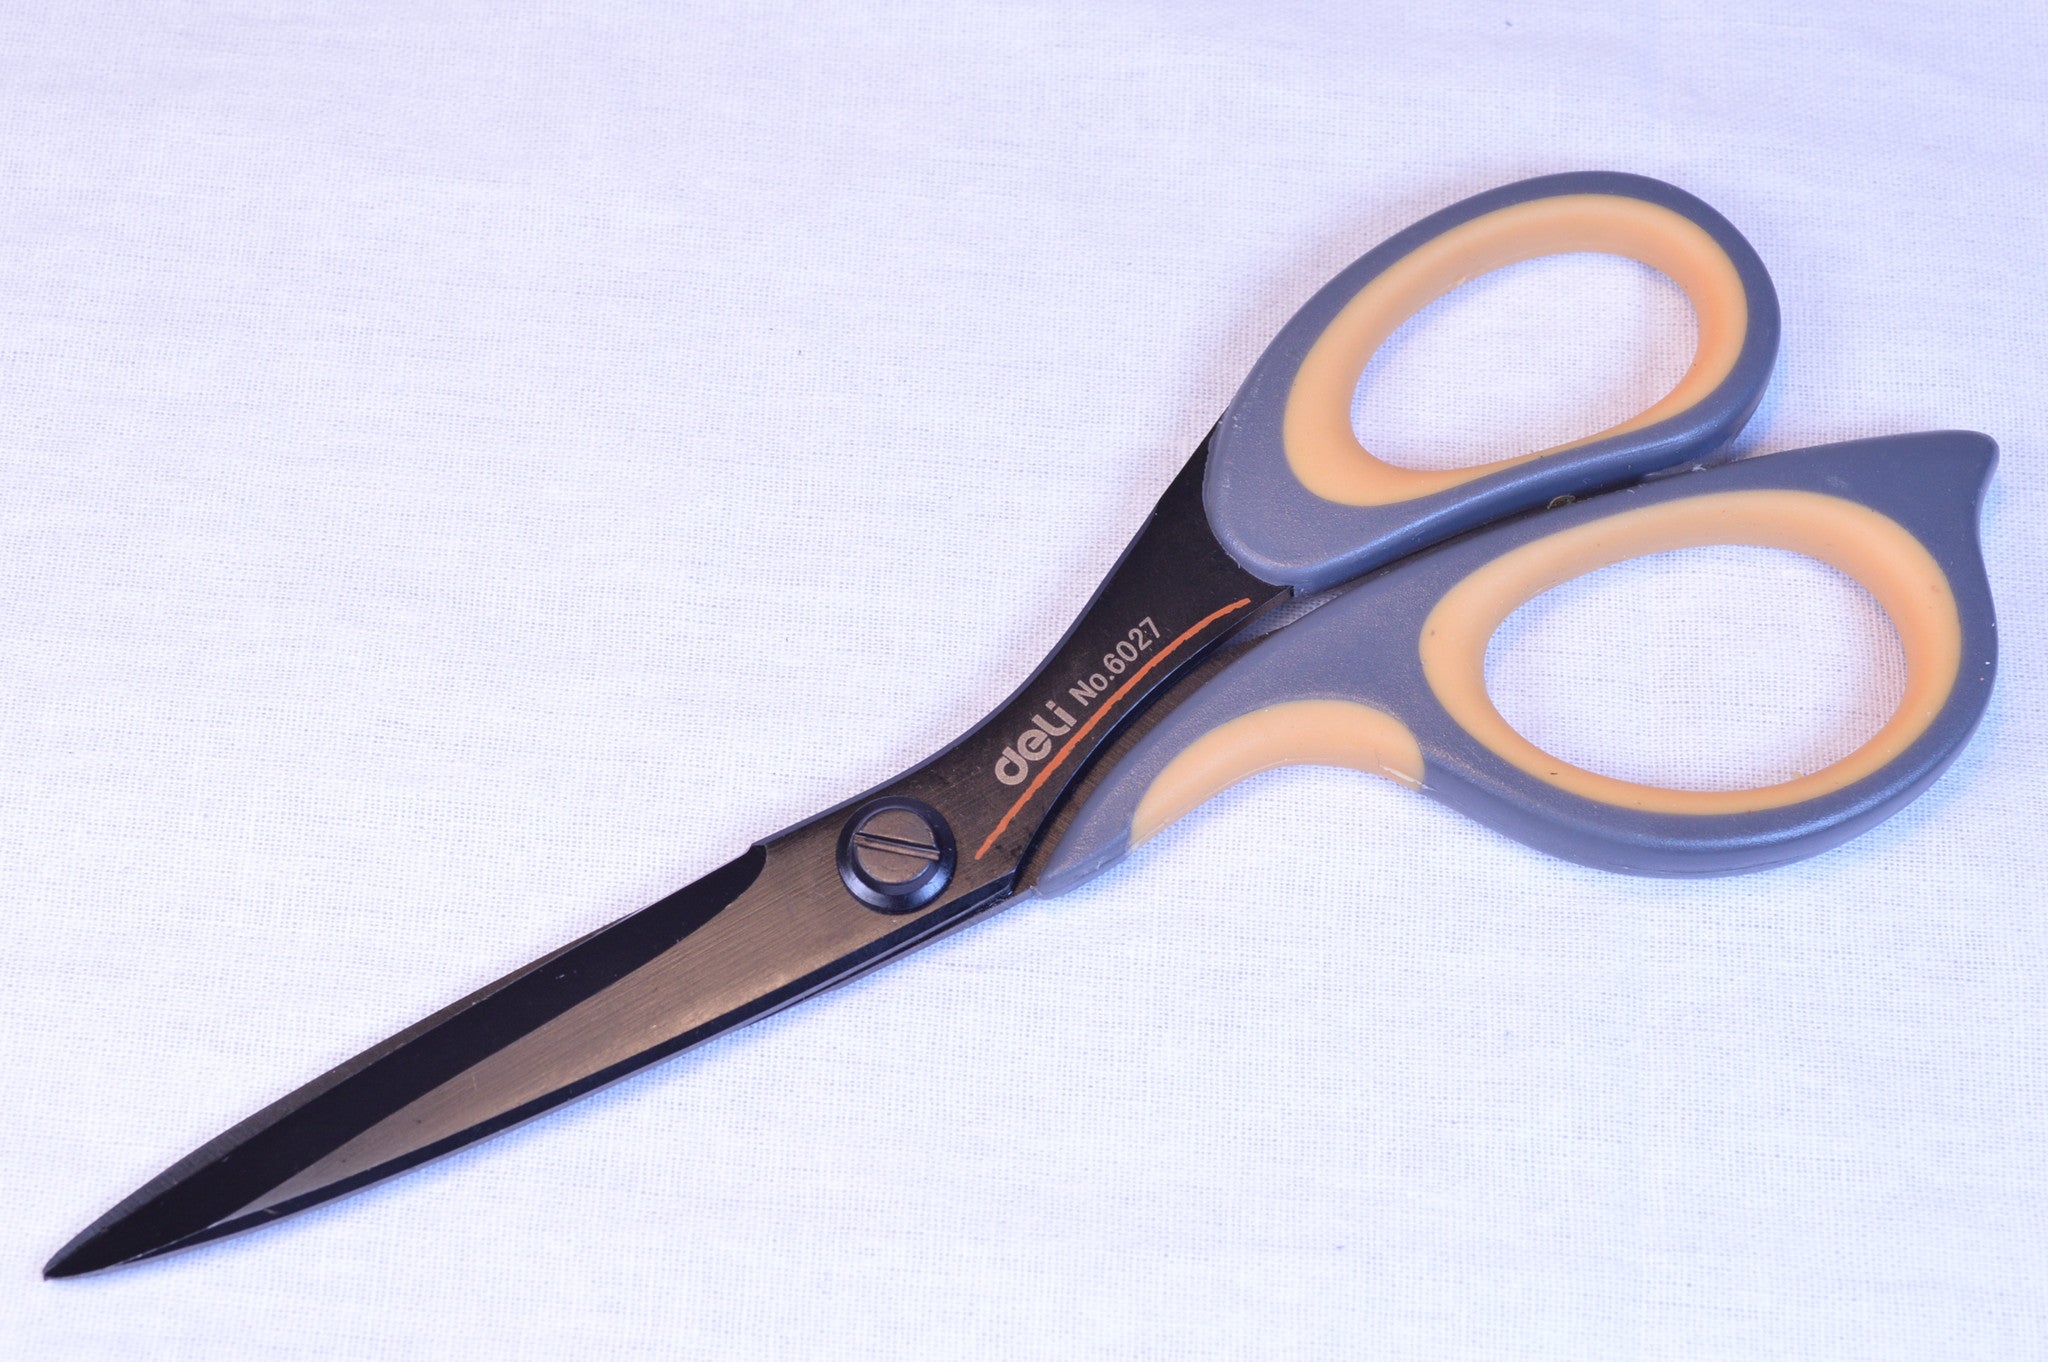 Stanley Minnow® 5 Kids Scissors, Pointed Tip, Orange